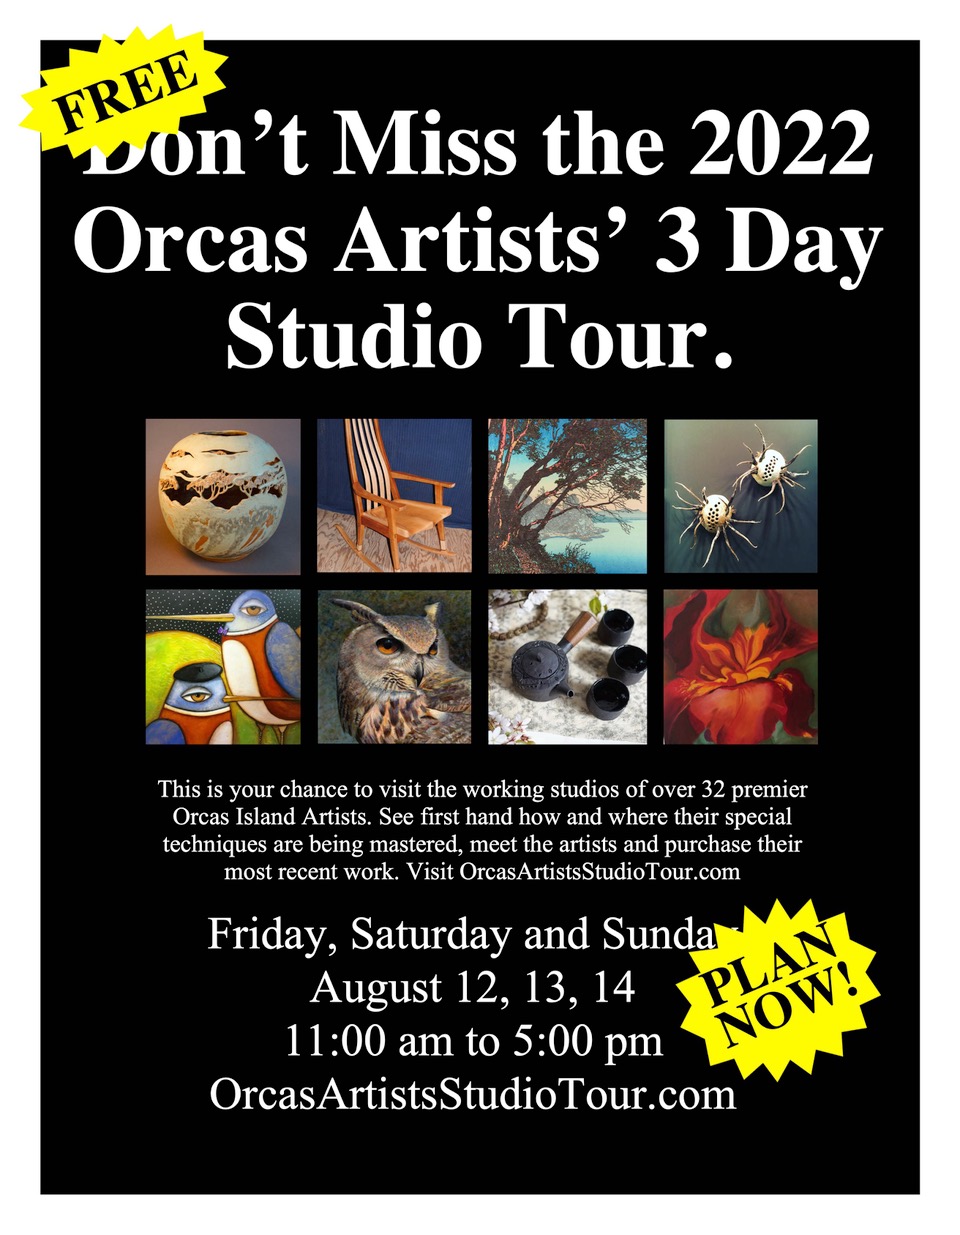 orcas artists studio tour